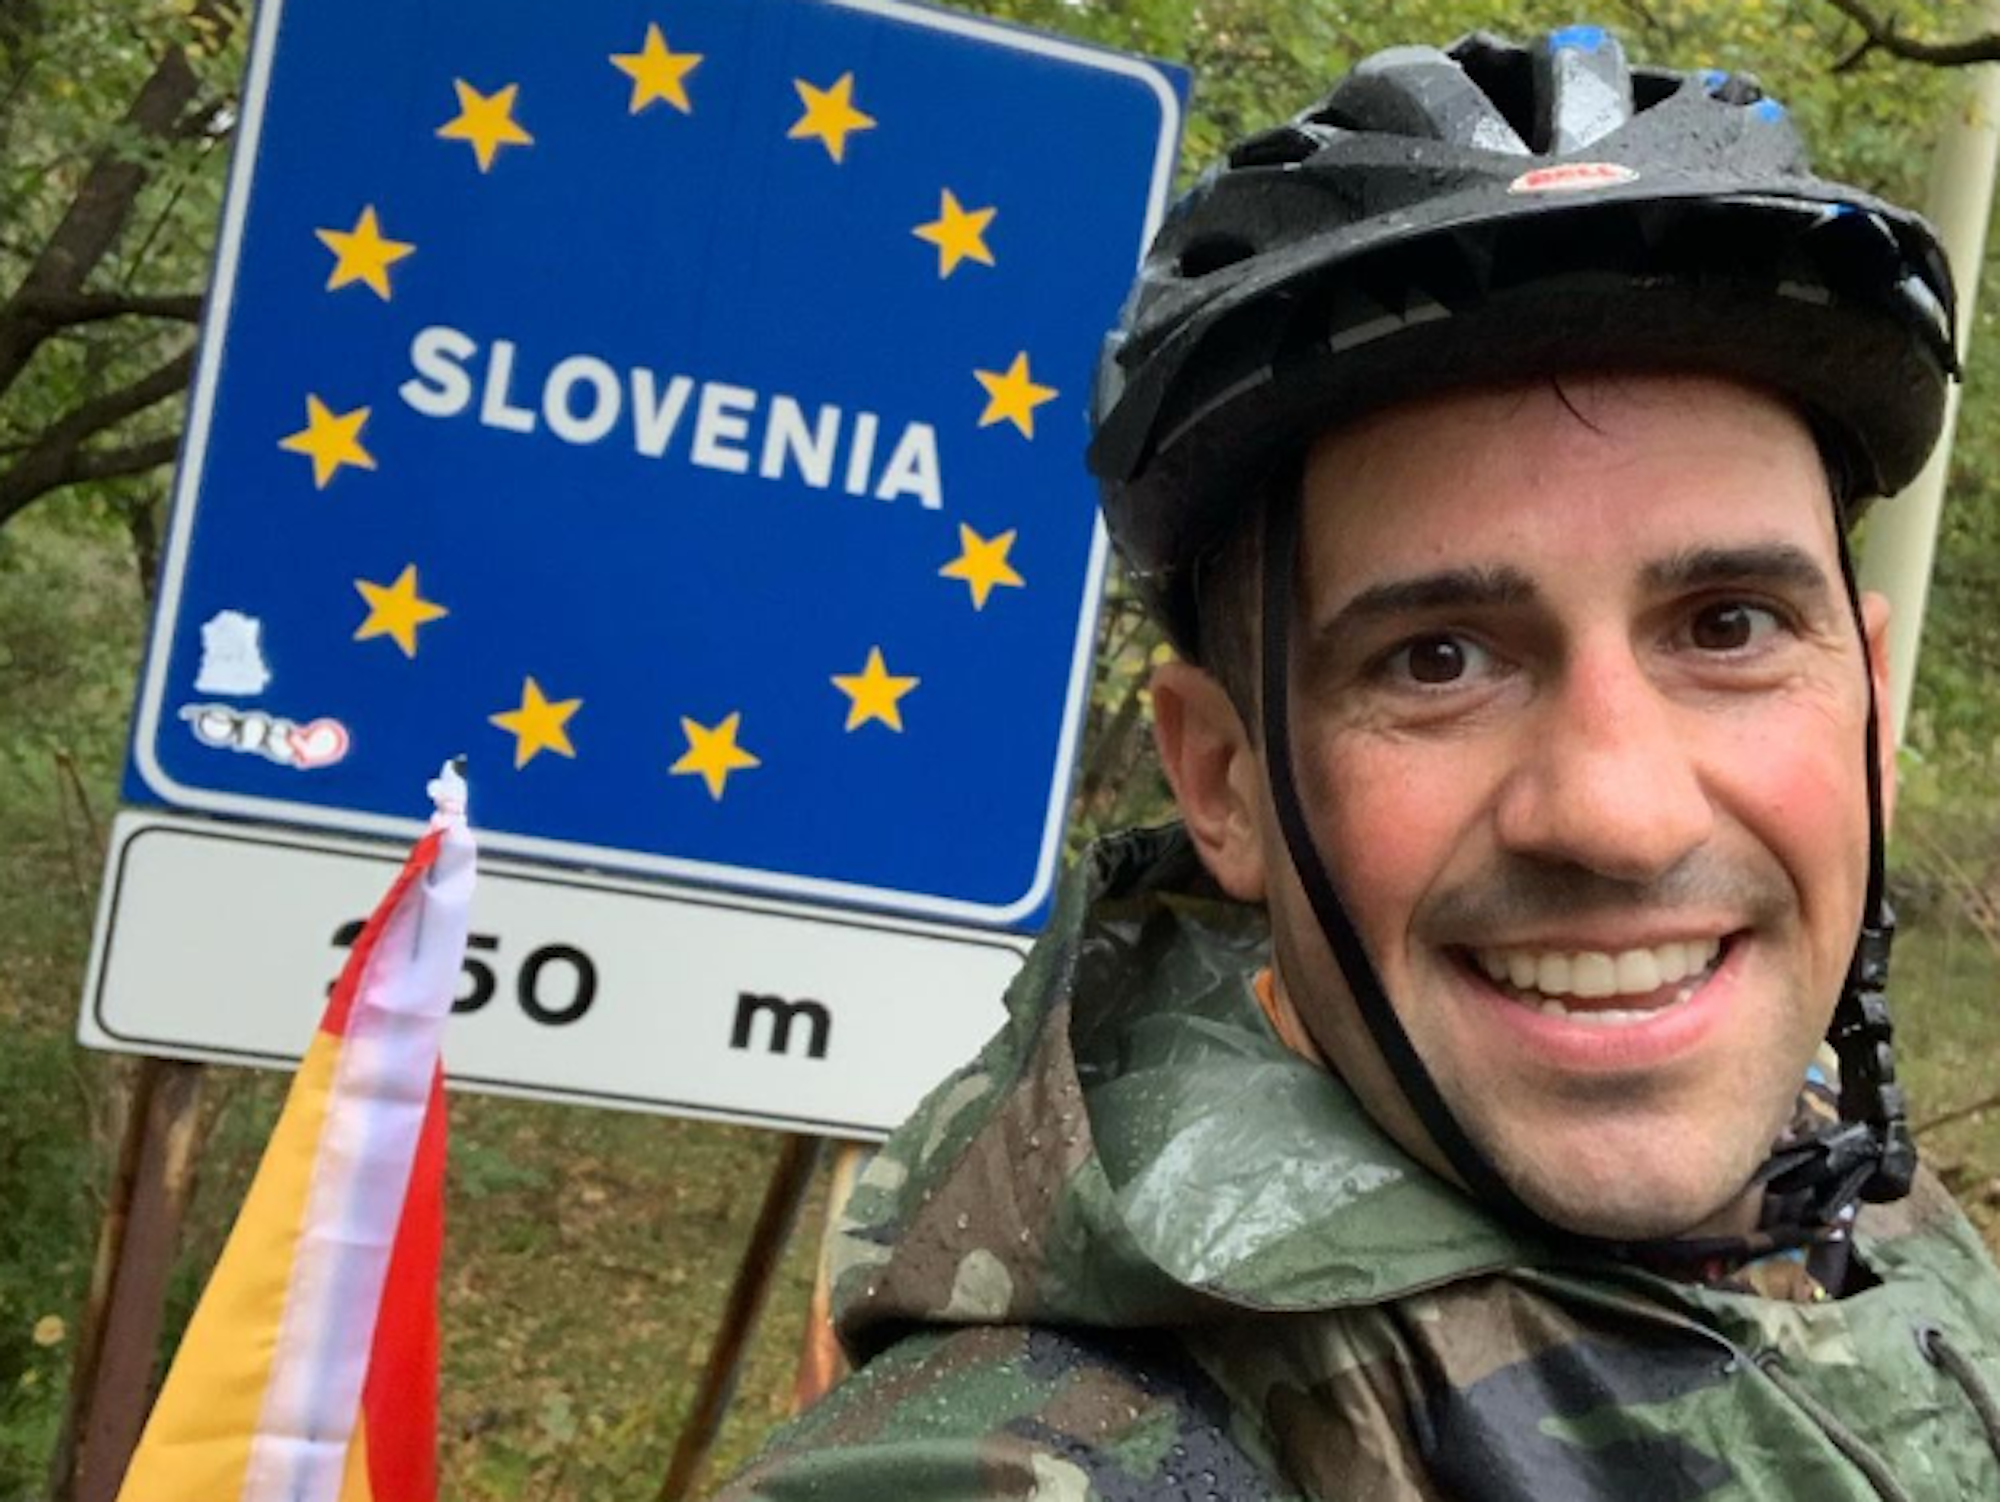 Santiago Sanchez Cogedor fotografiert sich selbst vor der Grenze zu Slowenien.